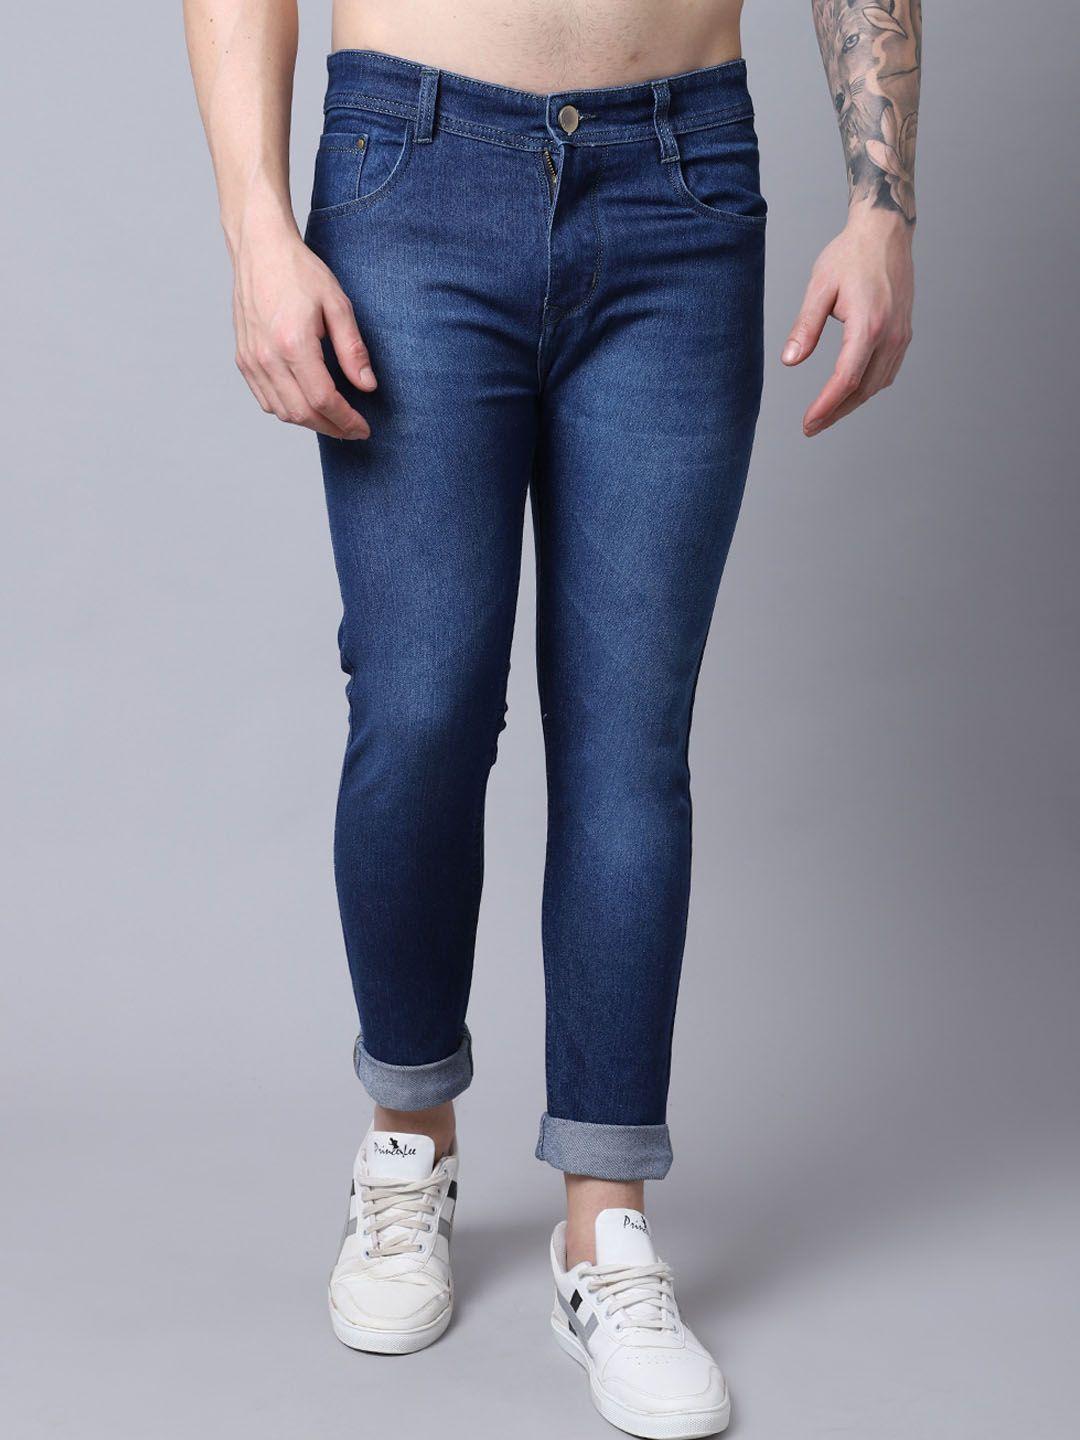 provogue-men-mid-rise-clean-look-light-fade-cotton-jeans